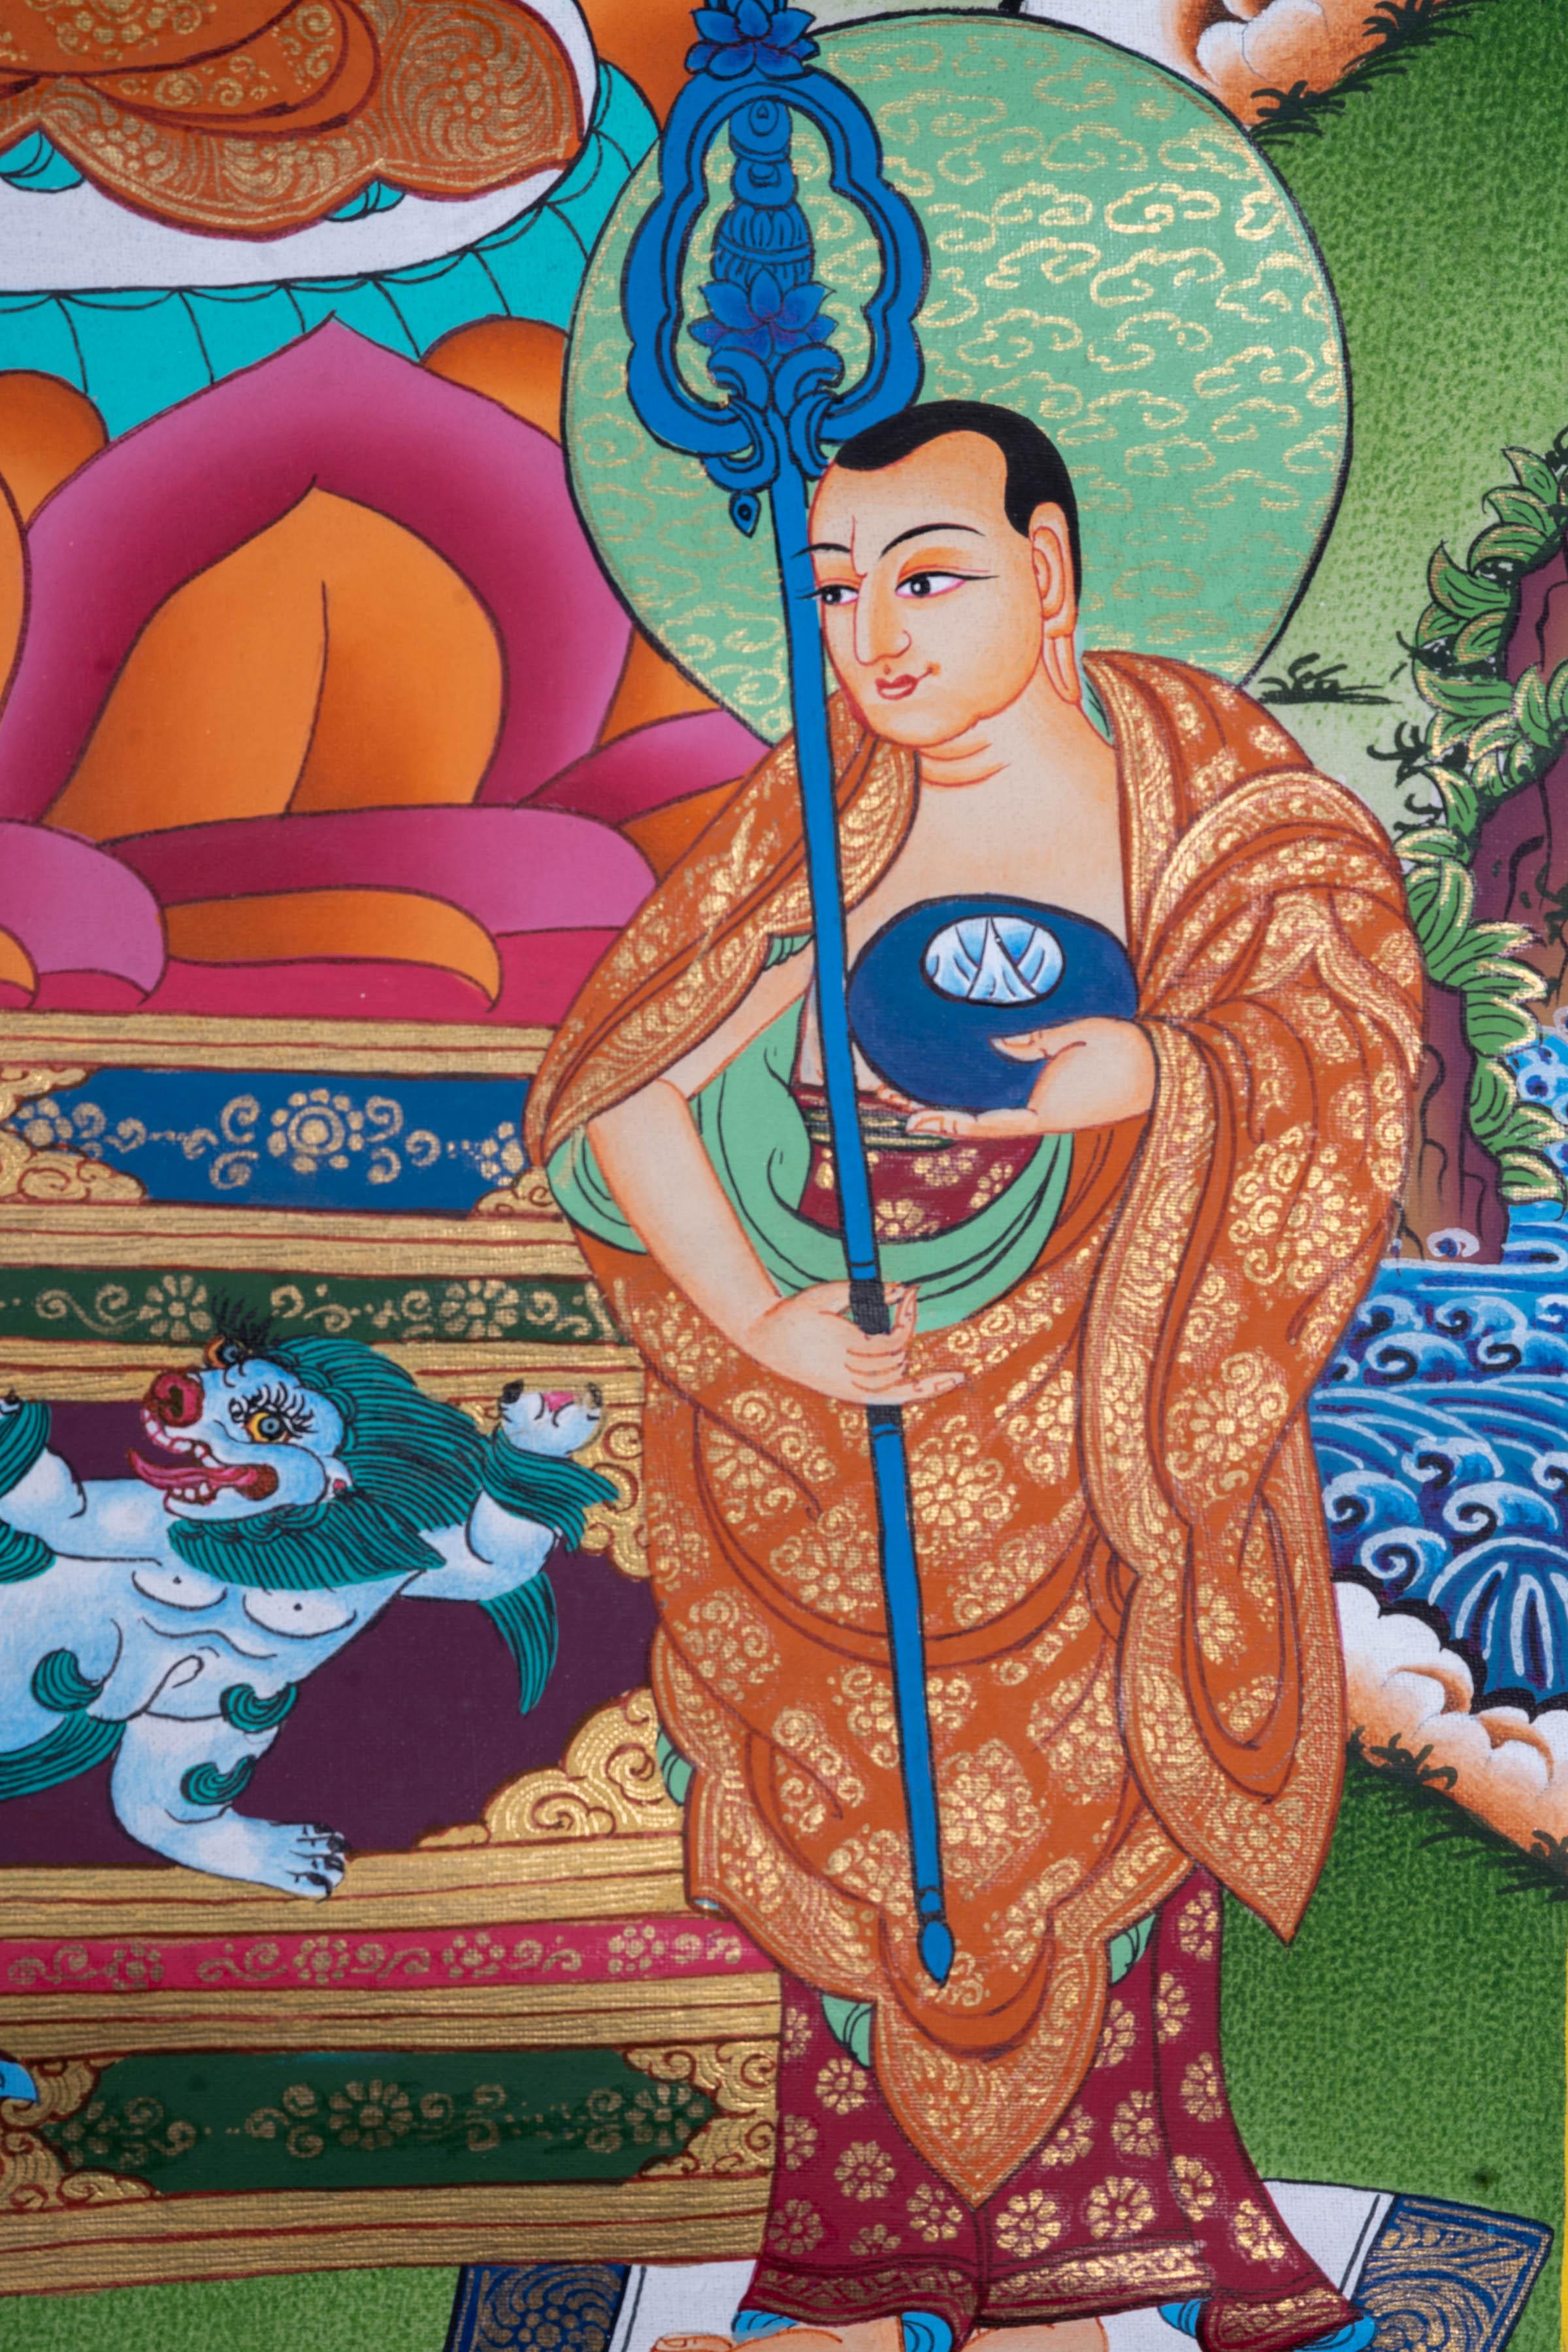 Shakyamuni Buddha Handmade Art - Himalayas Shop